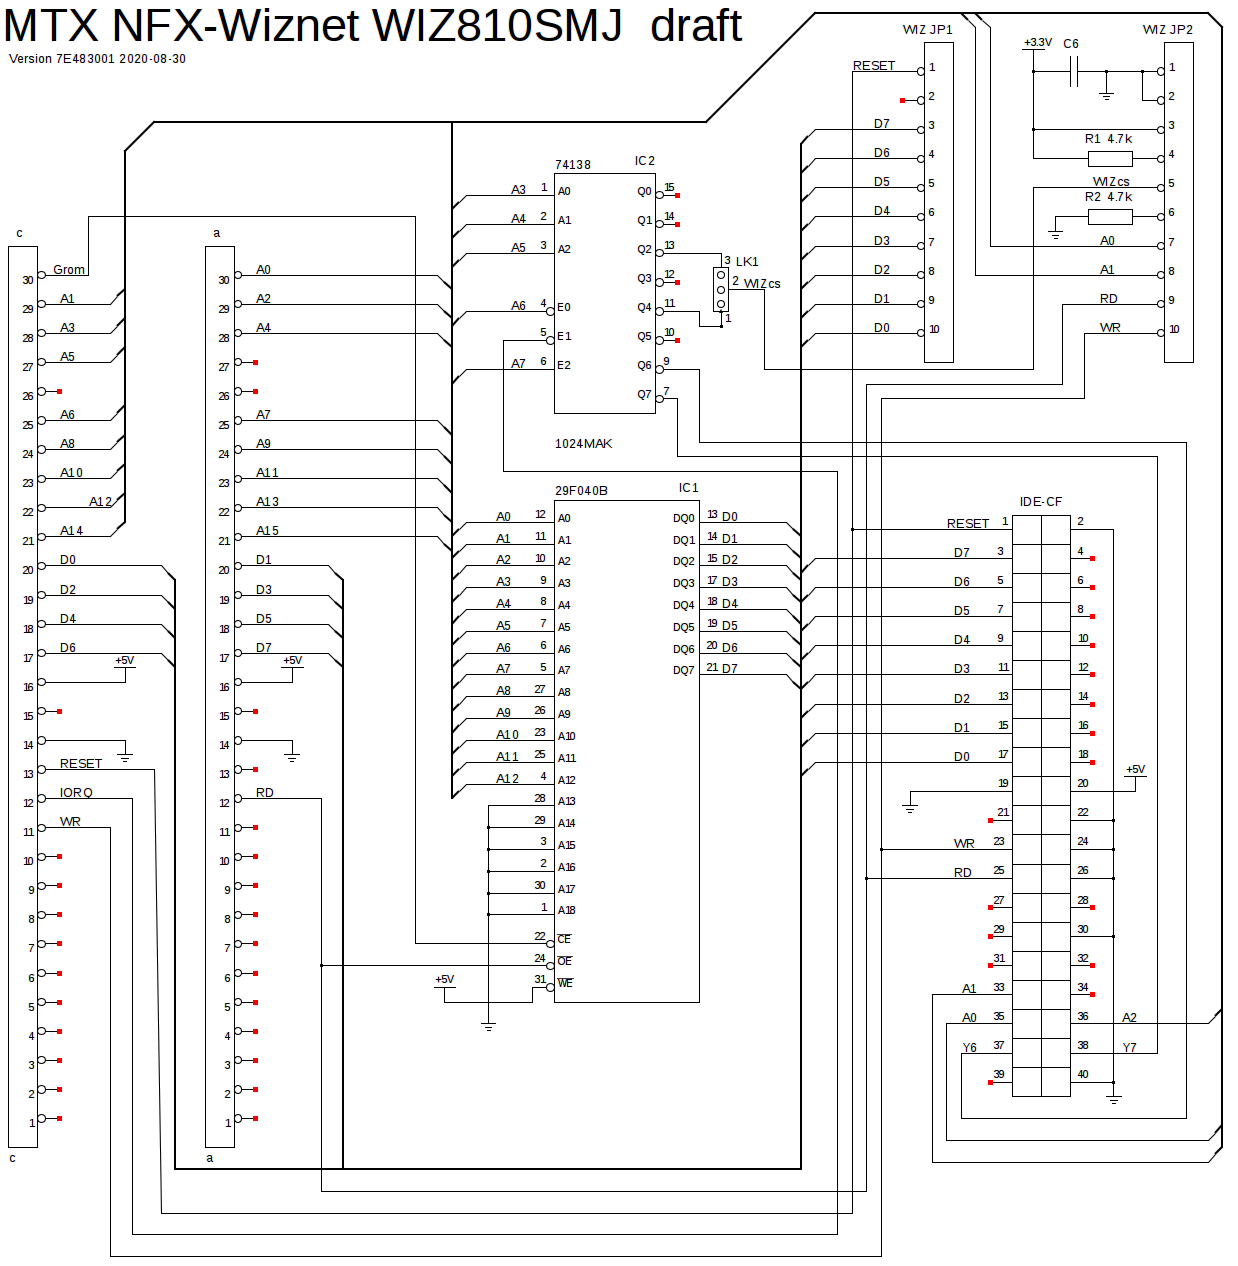 NFX-Wiznet WIZ810SMJ draft schematic